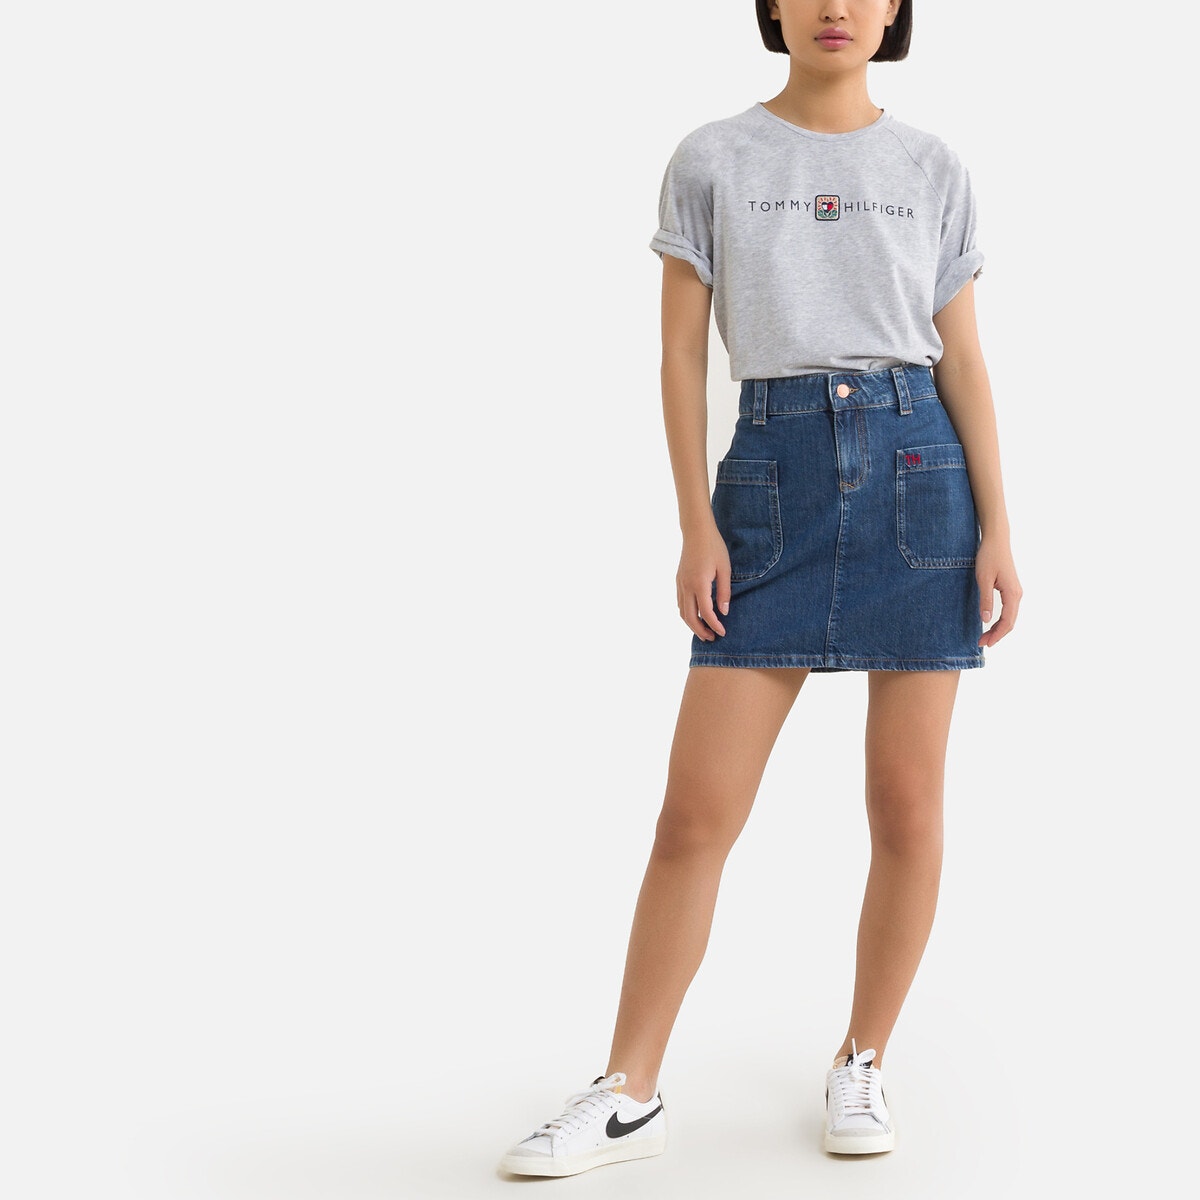 ΠΑΙΔΙ | Φούστες | Mini Κοντή τζιν φούστα, 10-16 ετών